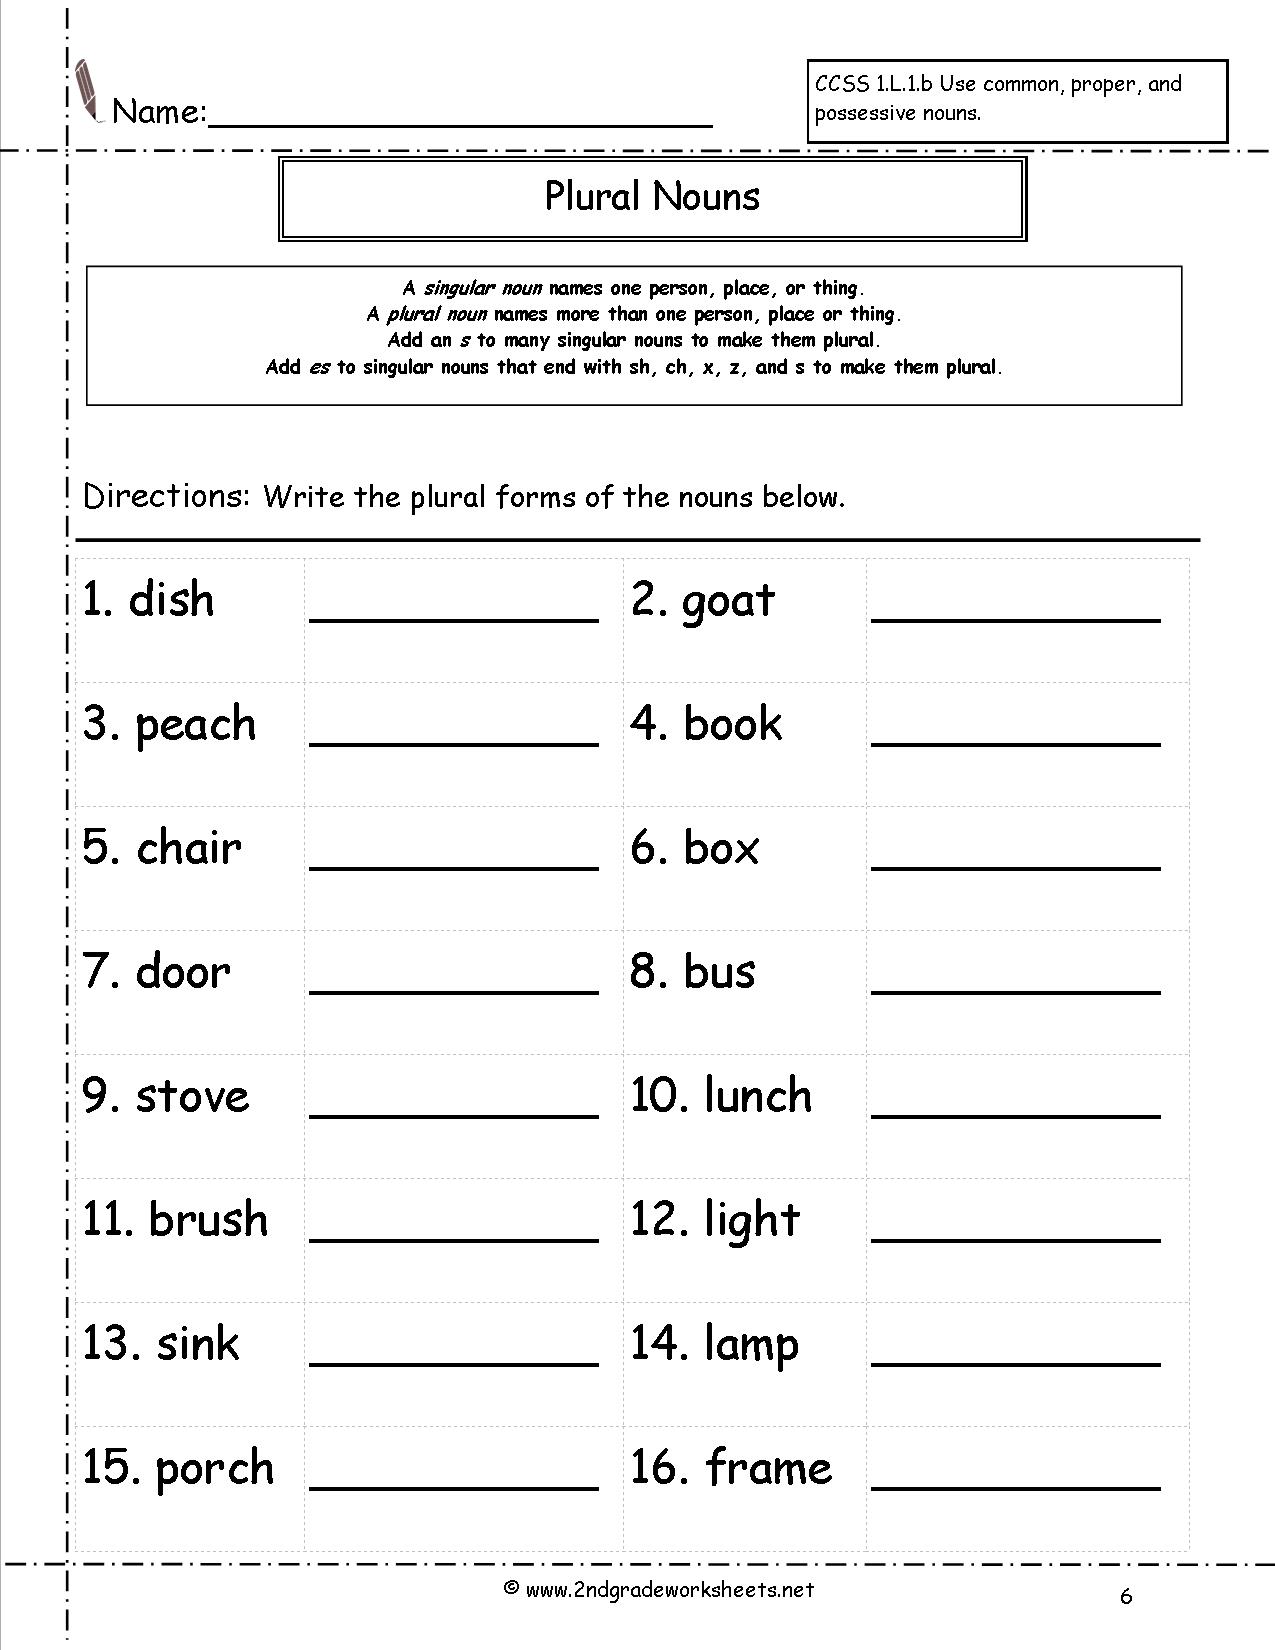 singular-and-plural-english-verbs-chart-english-grammar-worksheets